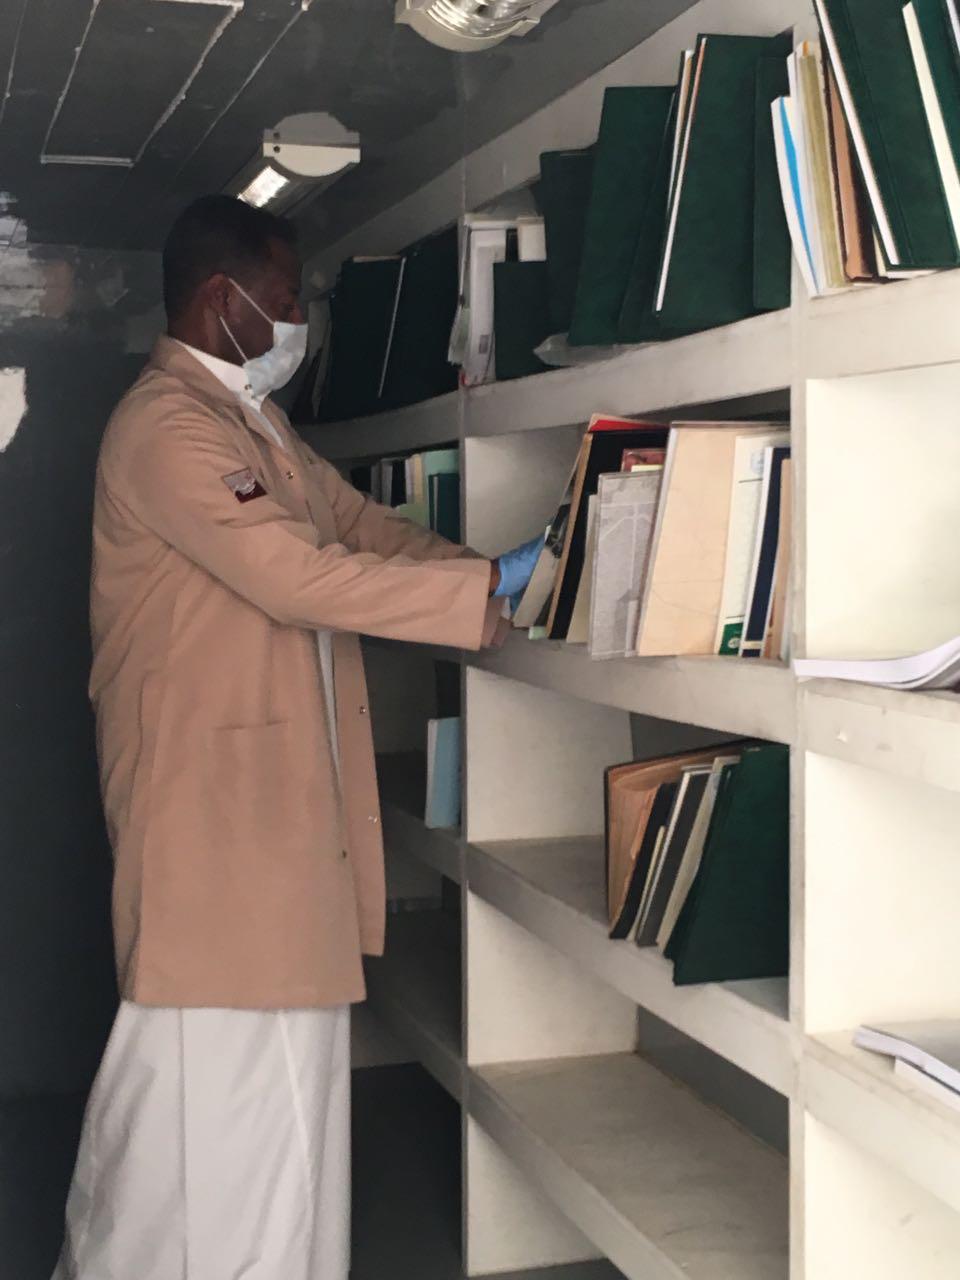 دارة الملك عبدالعزيز  تعقم مكتبة الملك سعود في جدة من خلال وحدة التعقيم المتنقلة بأعمال المحافظة على المواد التاريخية بمكتبة الملك سعود بجدة q.jpg